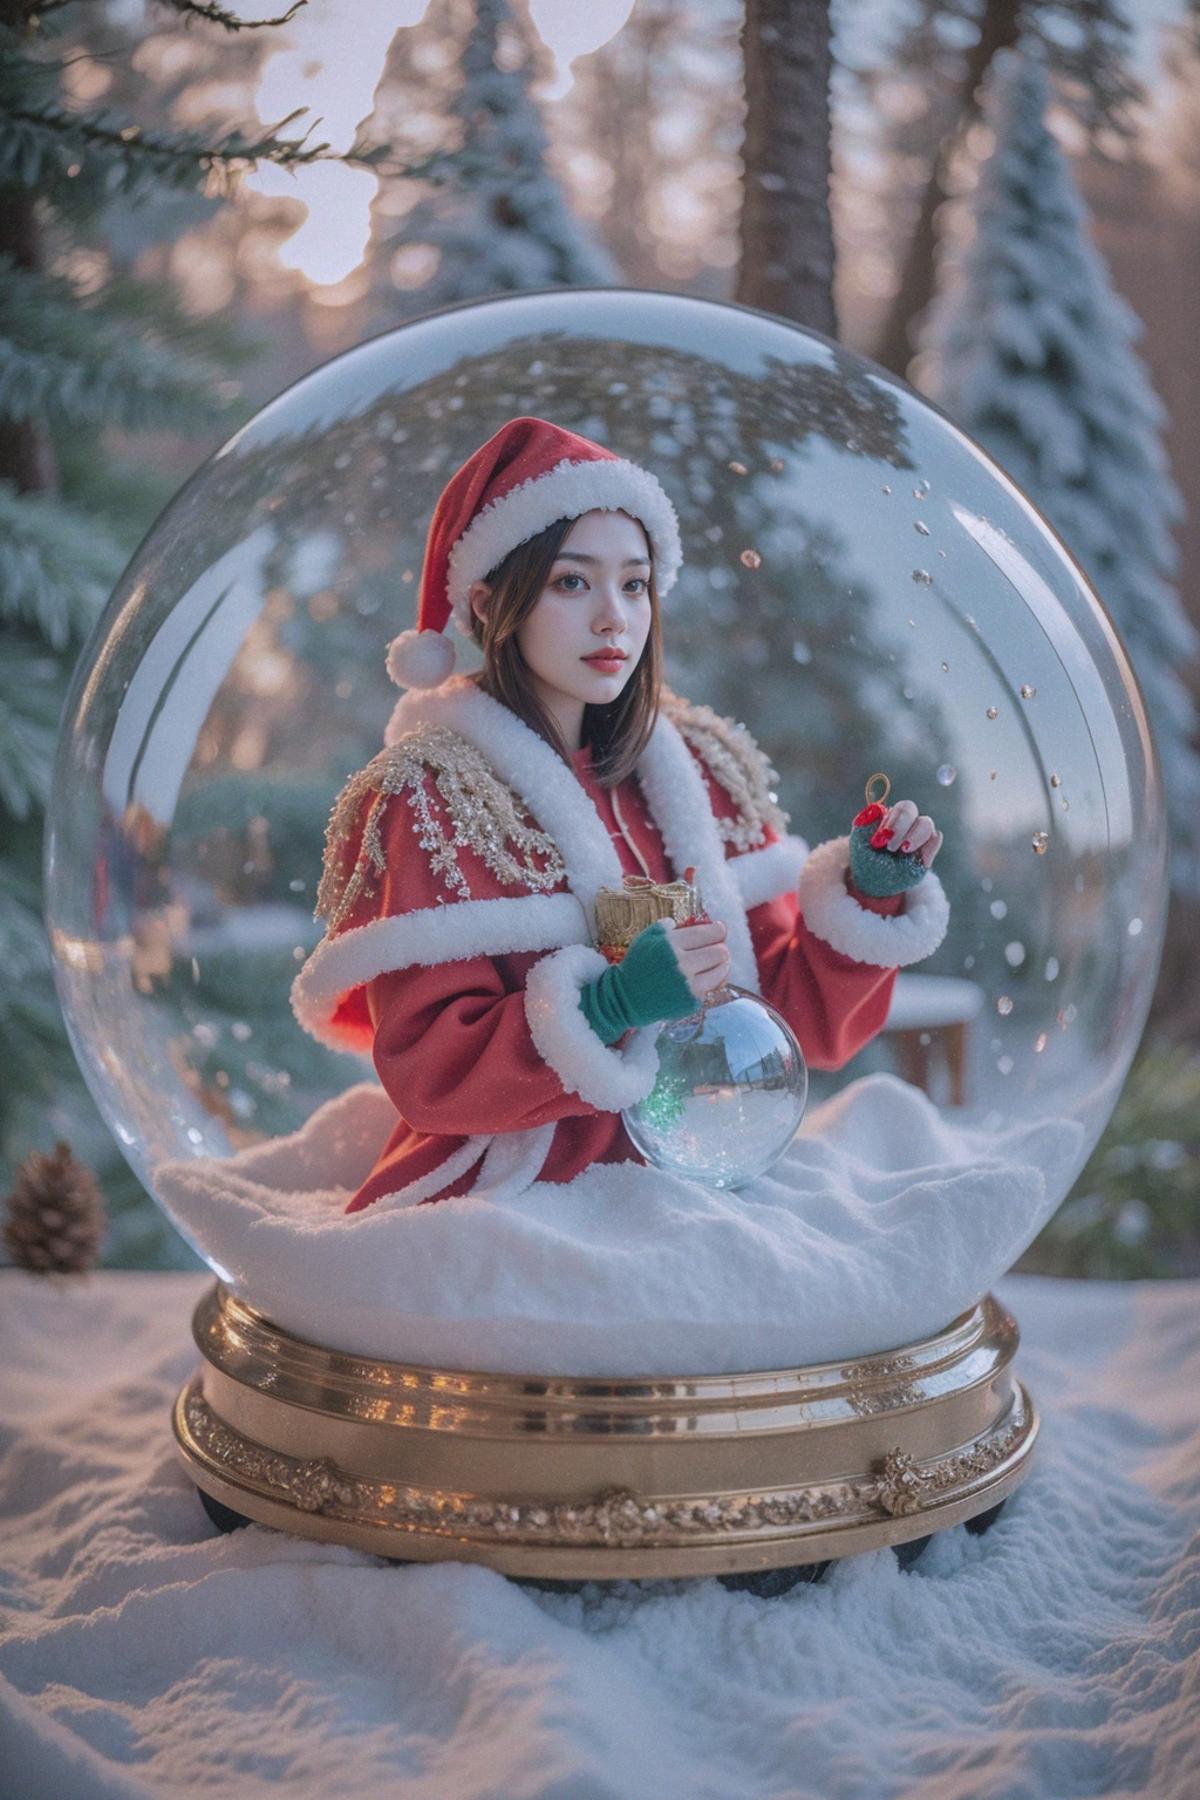 Christmas crystal ball image by Merjic